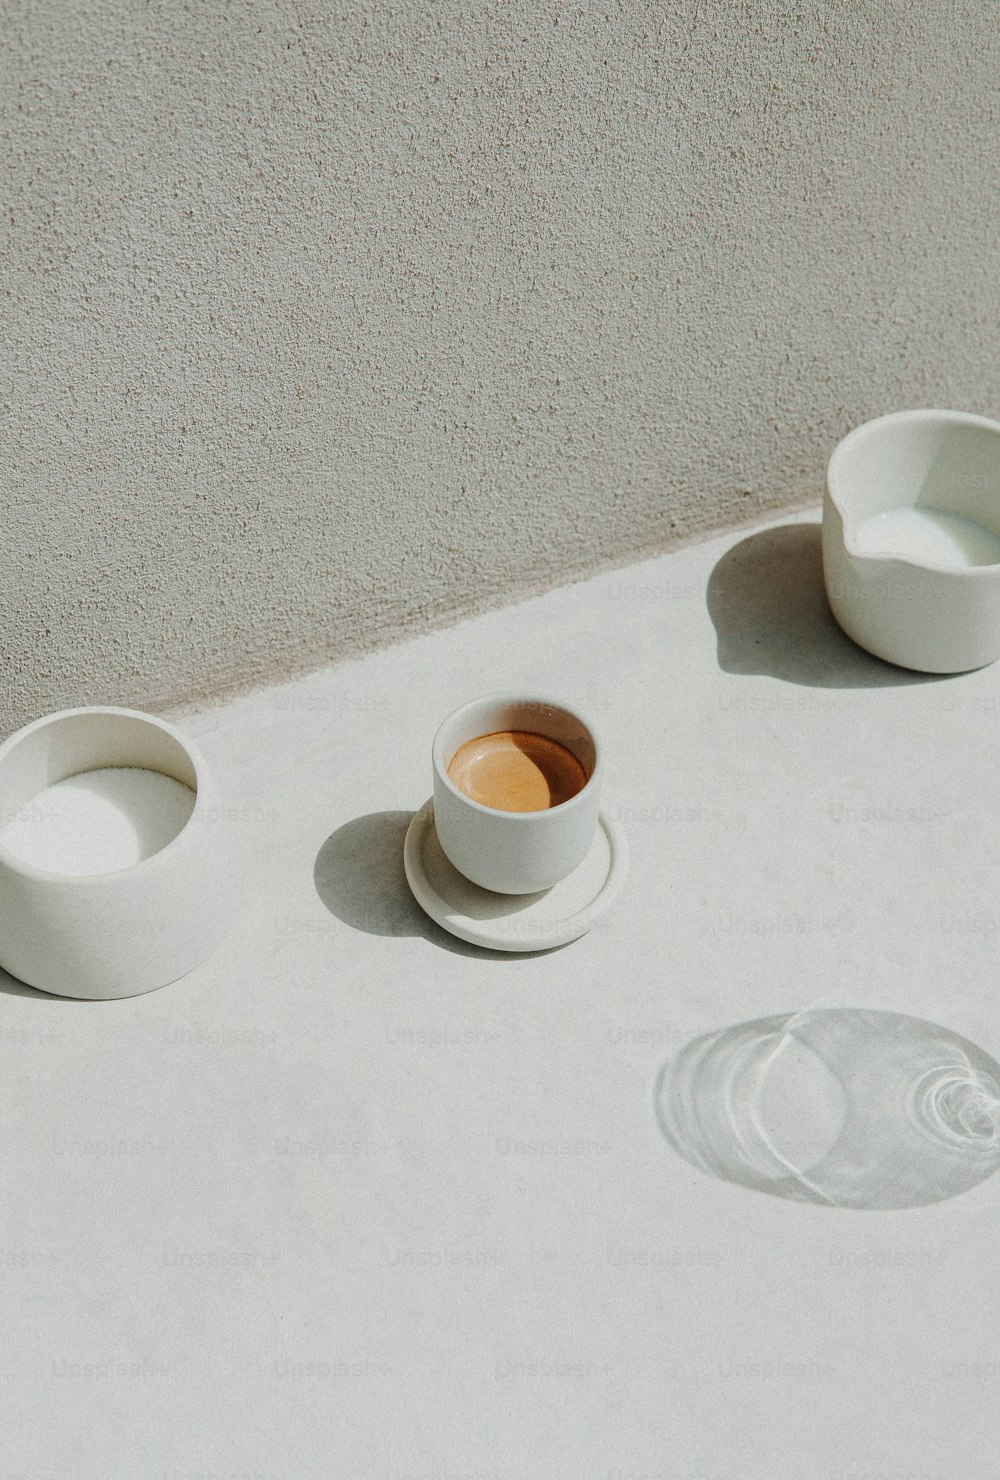 하얀 그릇과 컵이 놓인 테이블